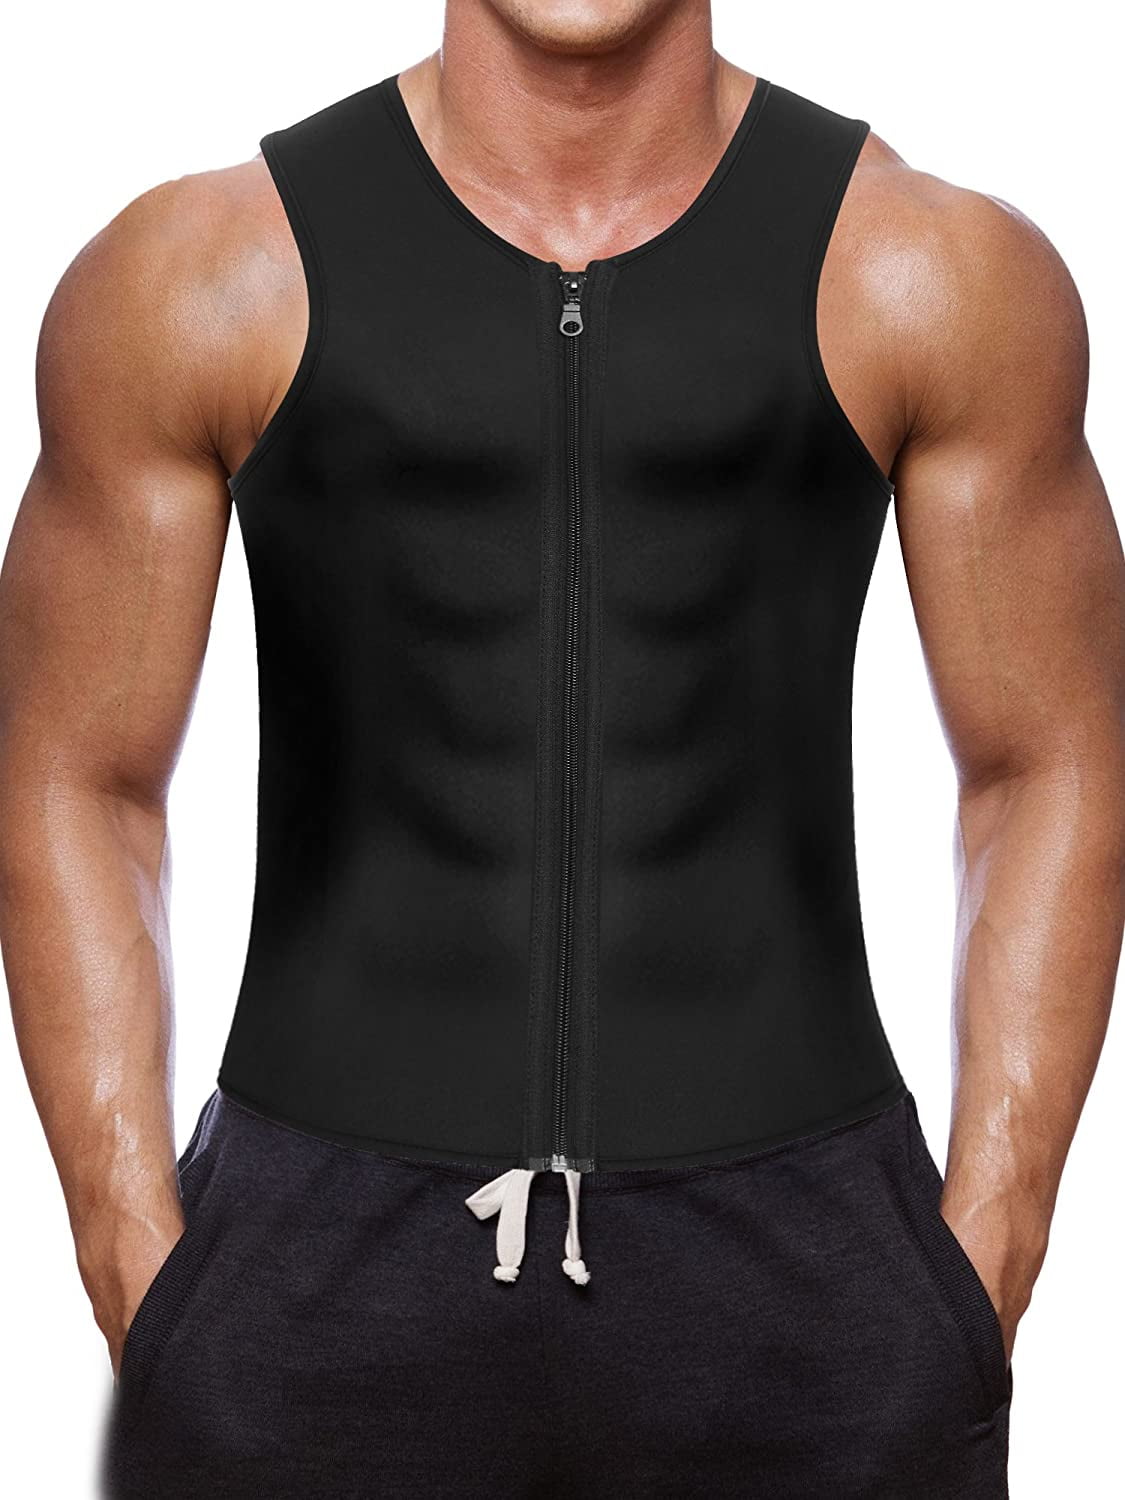 Fit Style Waist Trainer Vest for Weightloss Hot Neoprene Corset Body Shaper Zipper Sauna Tank Top Slimming Body Shaper Neoprene For Men